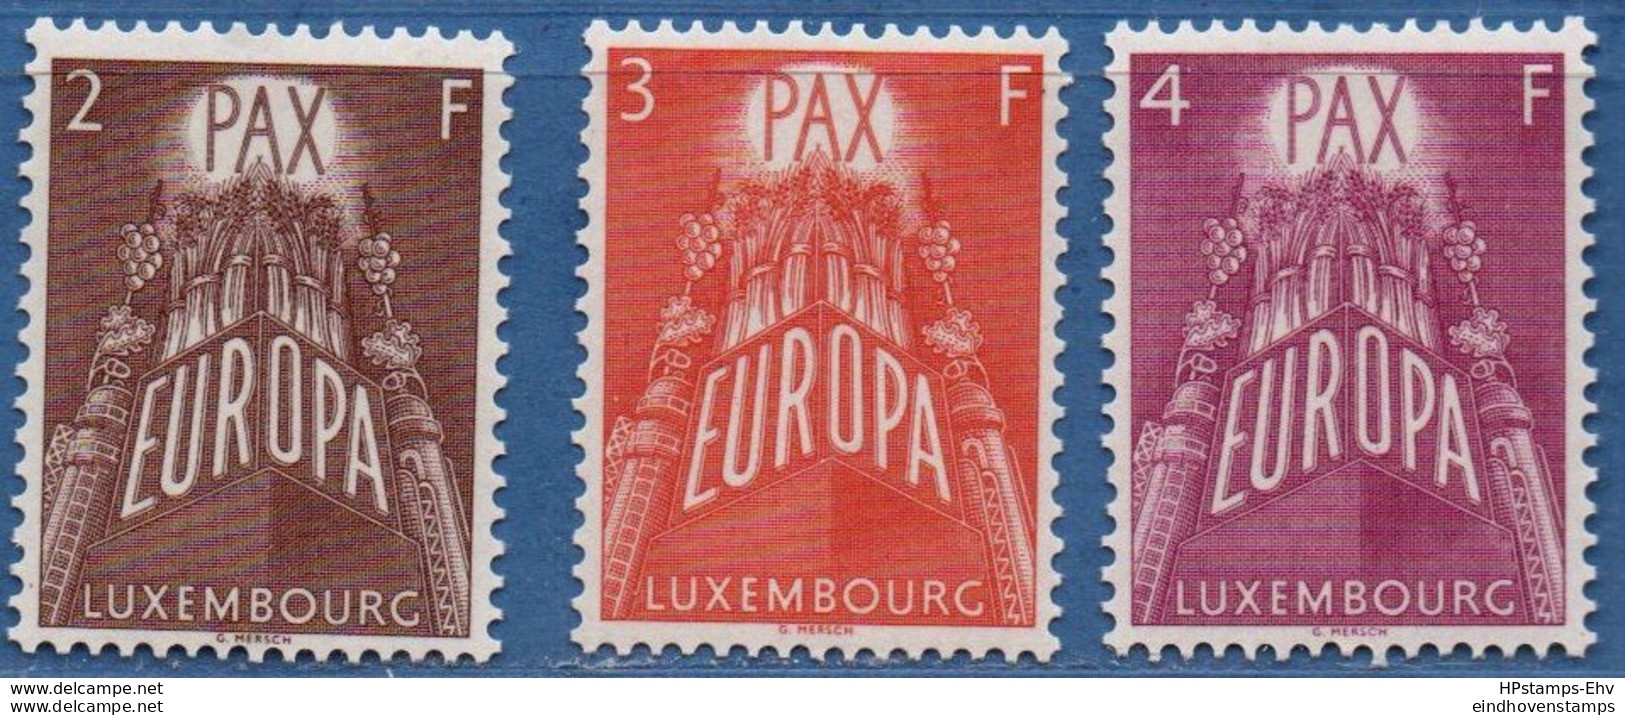 Luxemburg 1957 Cept 3 Values MNH 2006.1990 - 1957